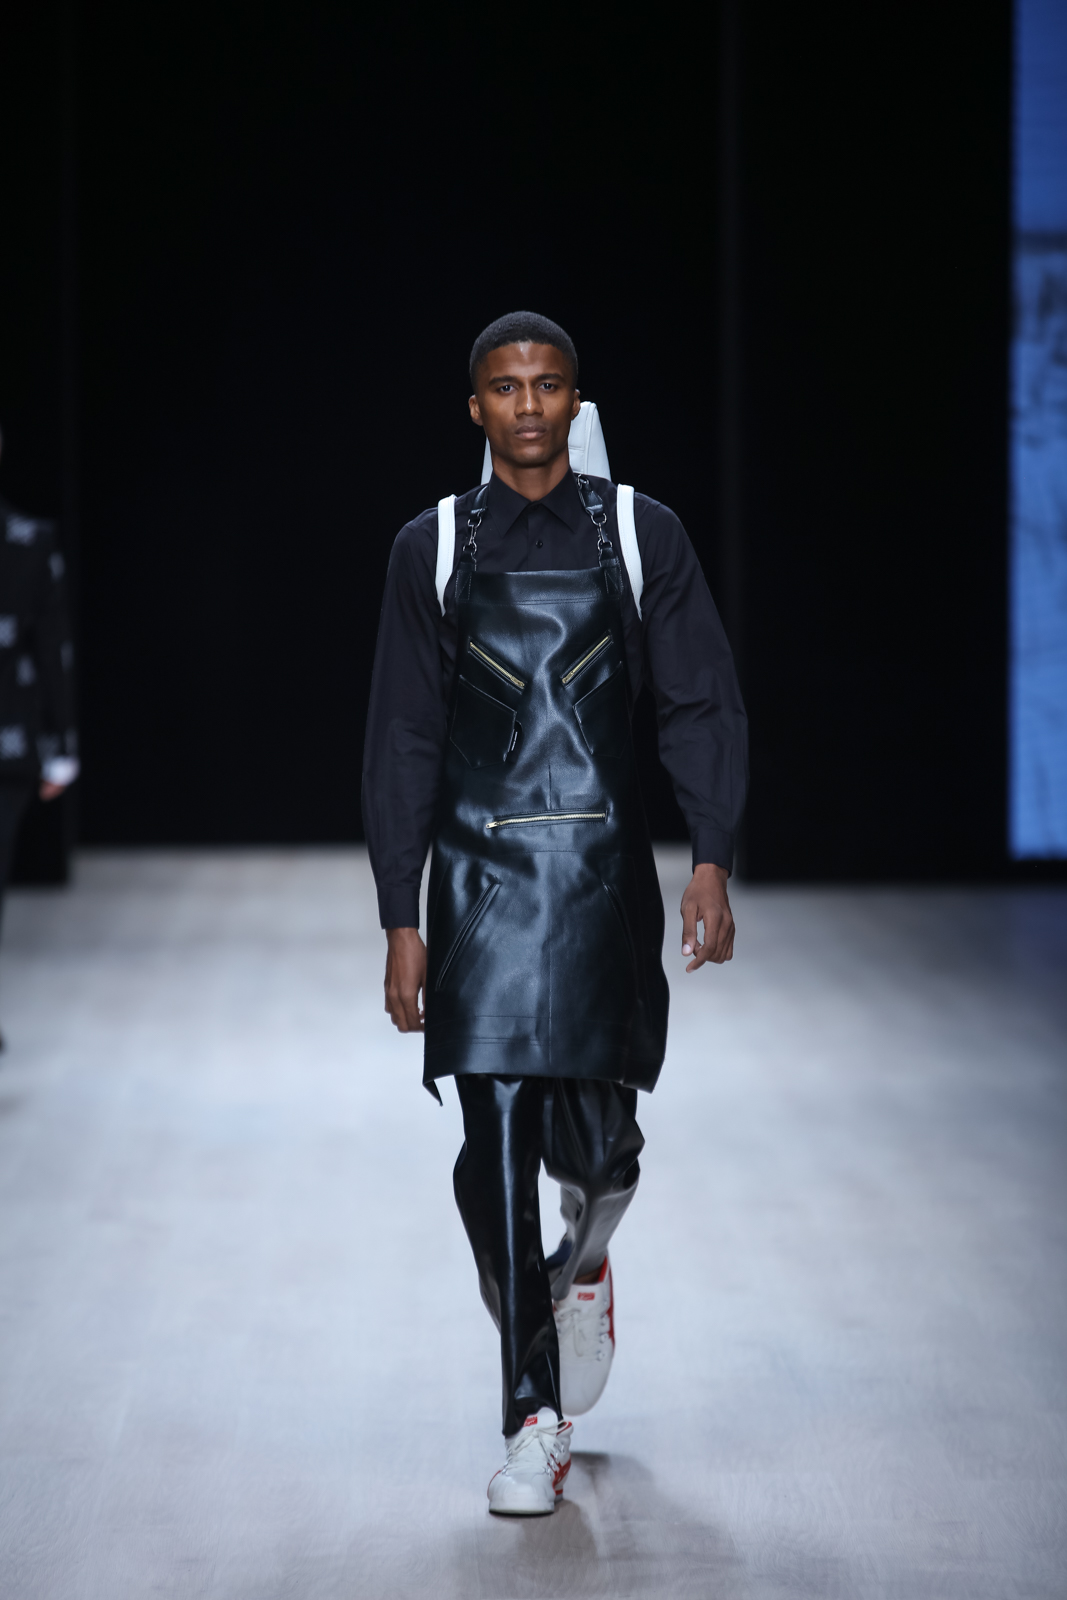 Arise Fashion Week Lagos 2019: Tokyo James